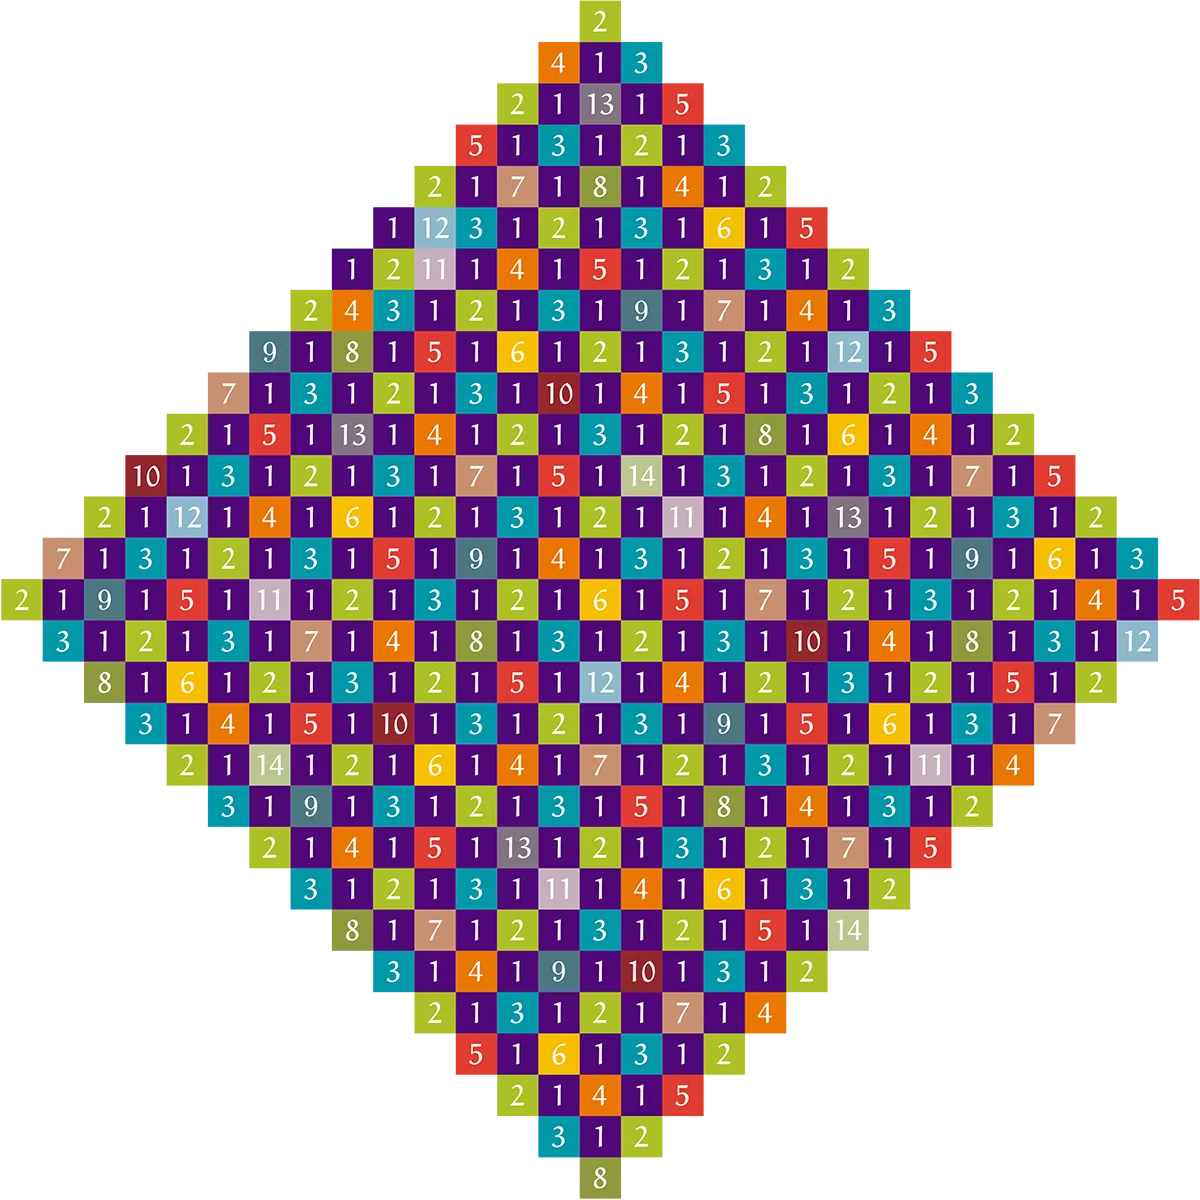 Ответом на задачу по упаковке цветов в бесконечной сетке оказалось число 15 - 4